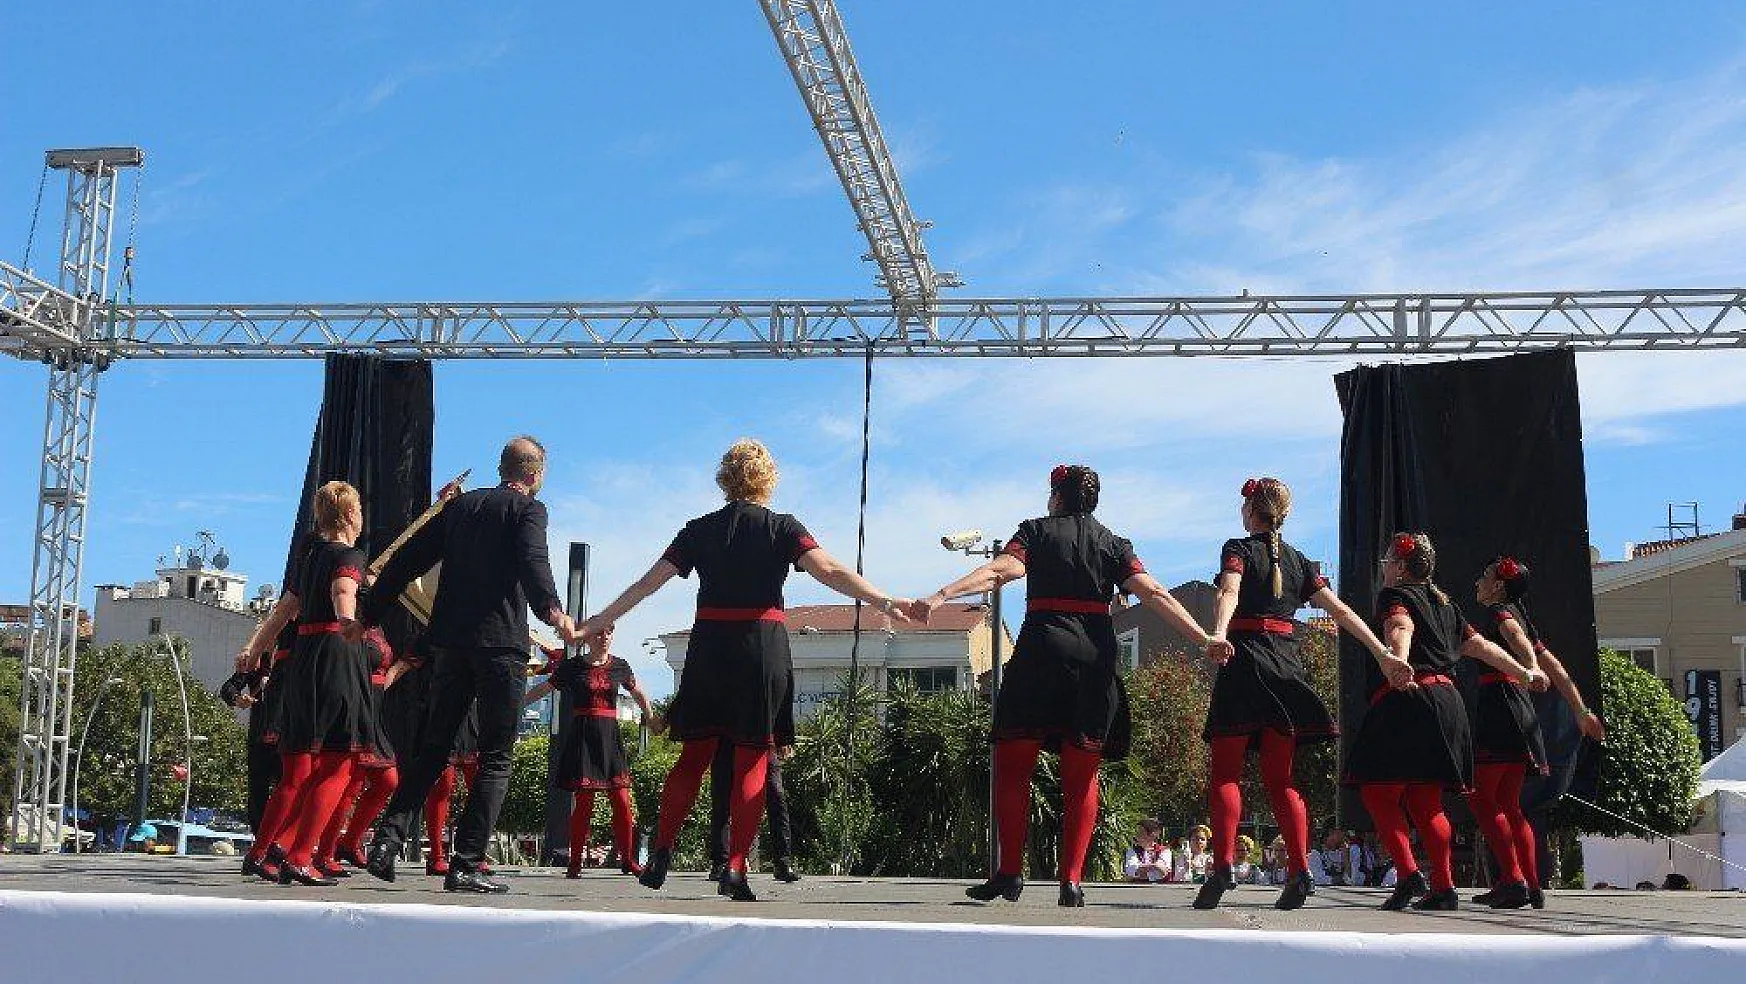 Uluslararası Marmaris Halk Dansları Festivali başladı